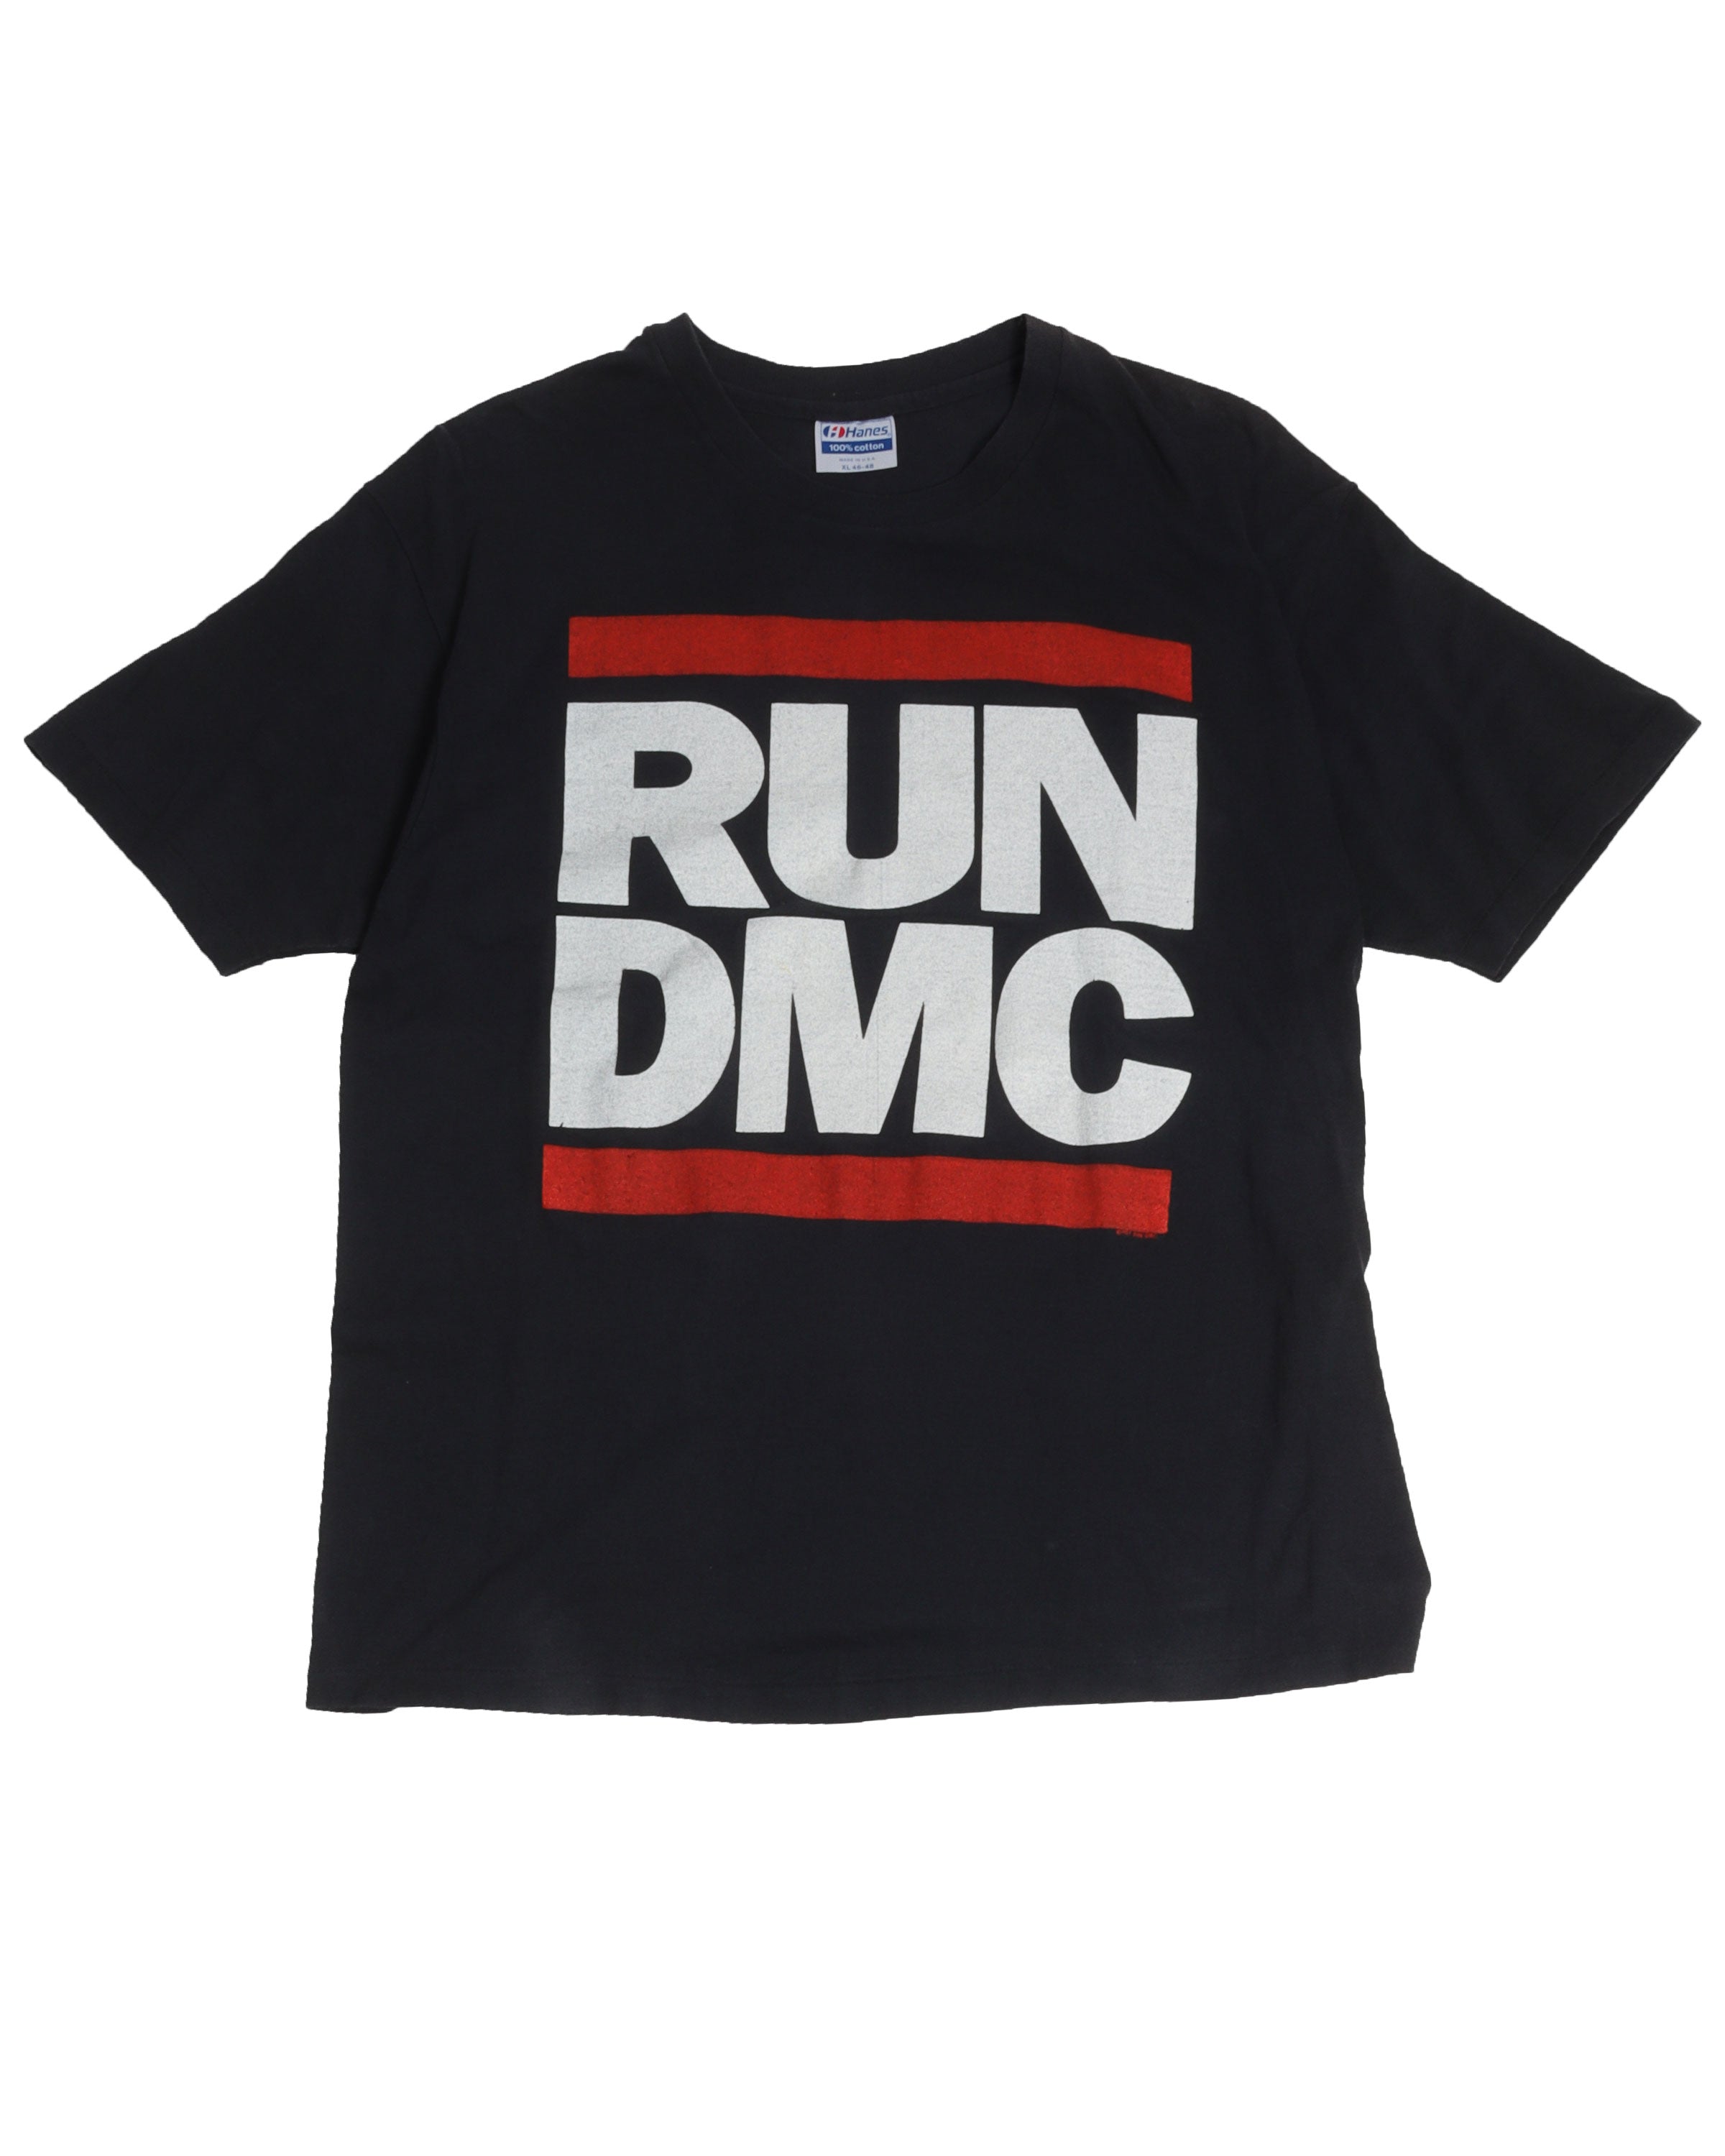 Run DMC "Tougher Than Leather" T-Shirt